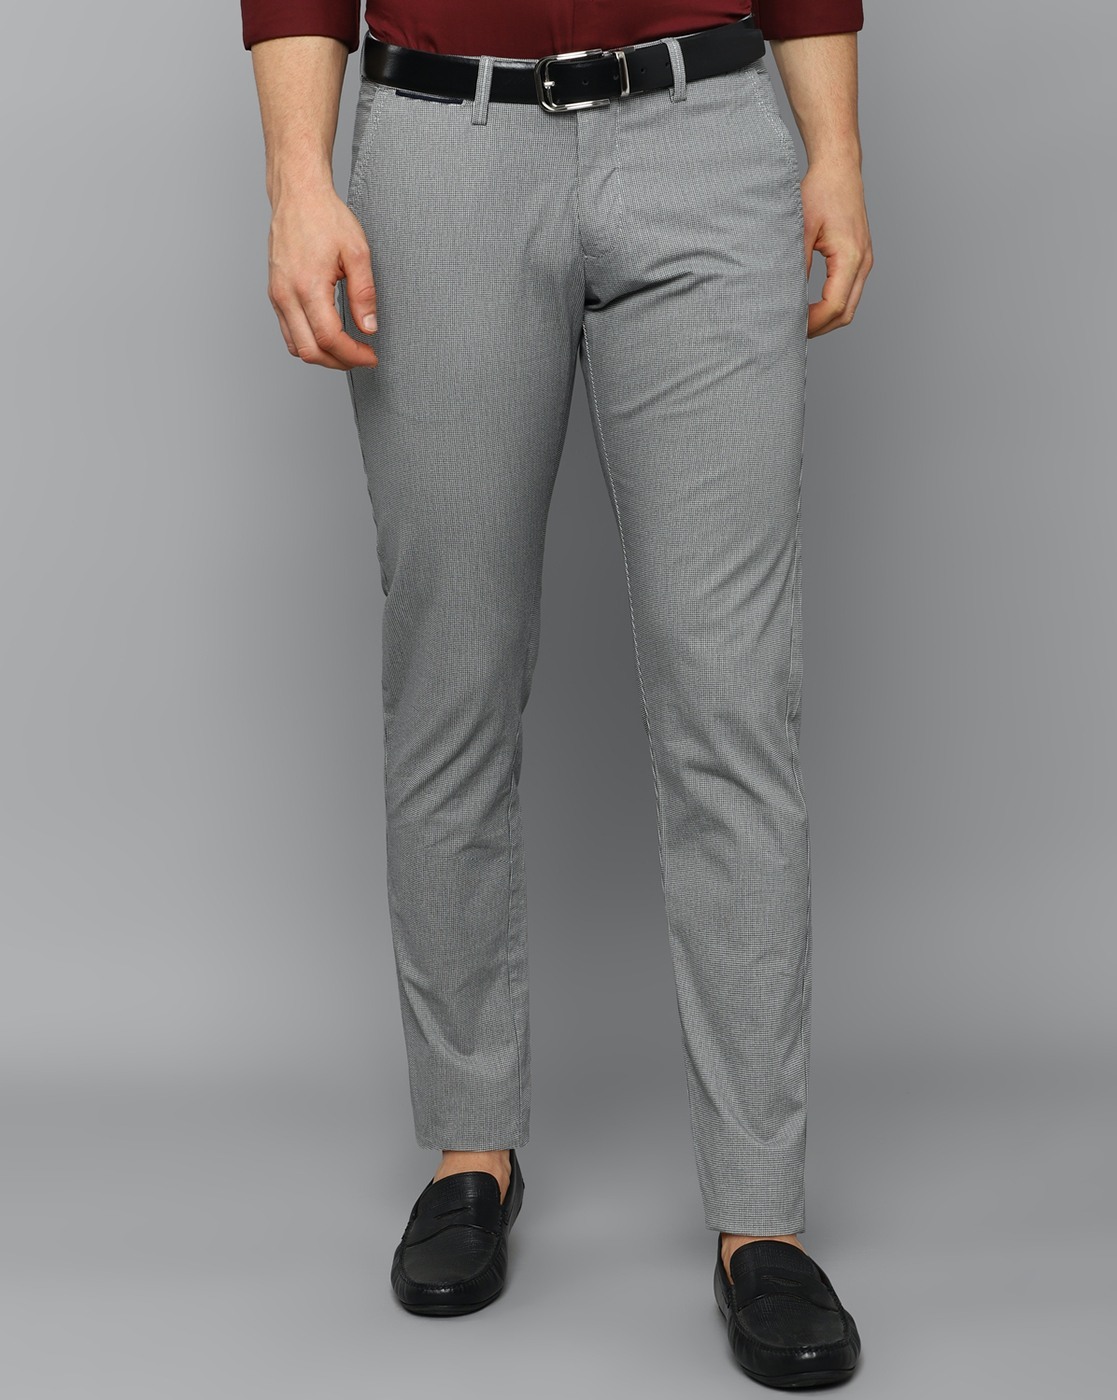 Buy Men Grey Regular Fit Solid Formal Trousers Online  23323  Allen Solly